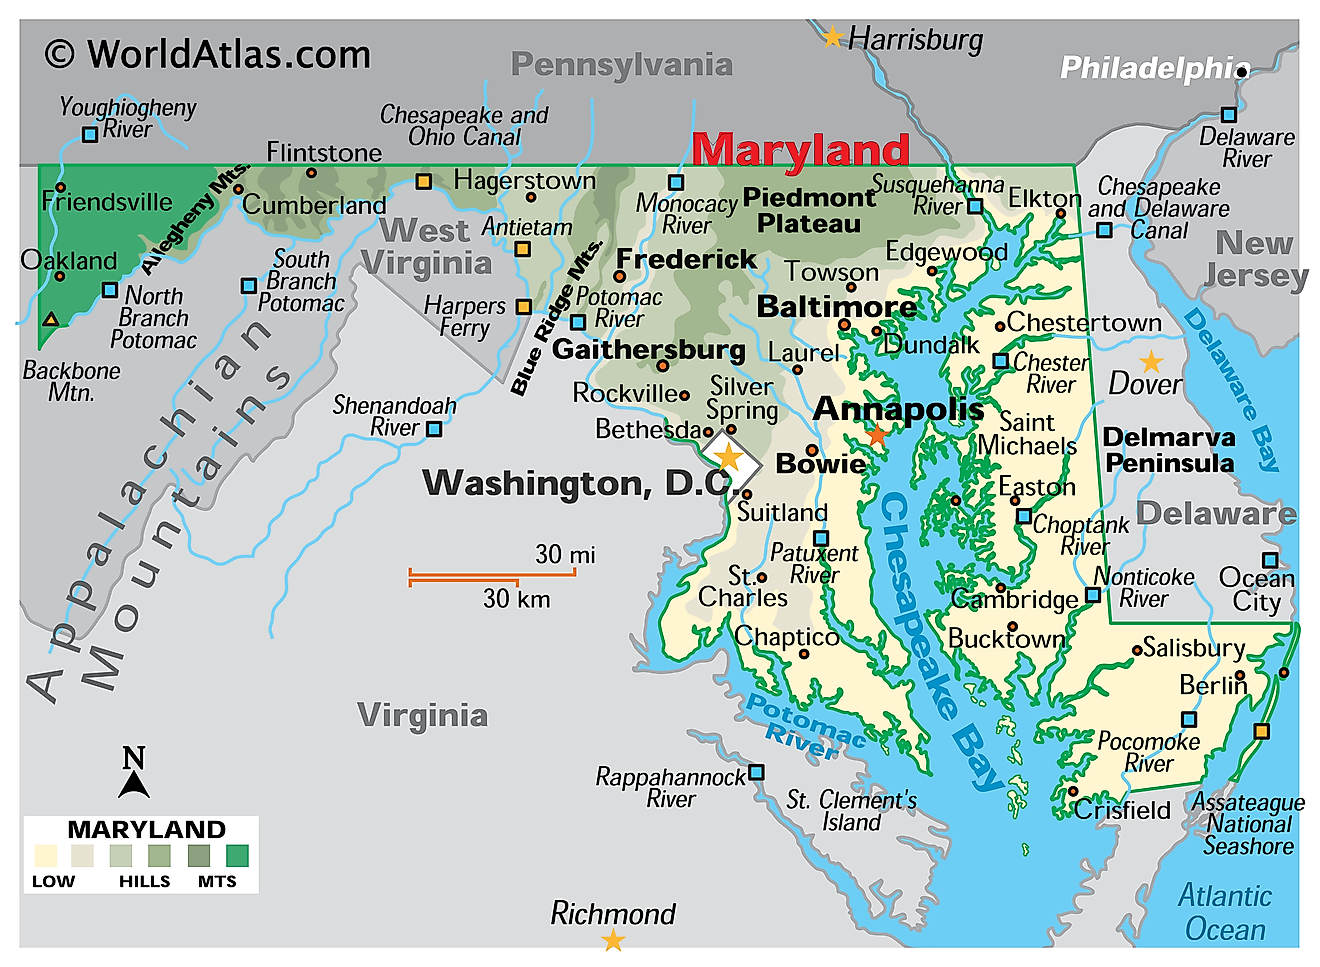 Mappa fisica del Maryland. Mostra le caratteristiche fisiche del Maryland, comprese le sue catene montuose, i fiumi principali, la penisola di Delmarva e la baia di Chesapeake.